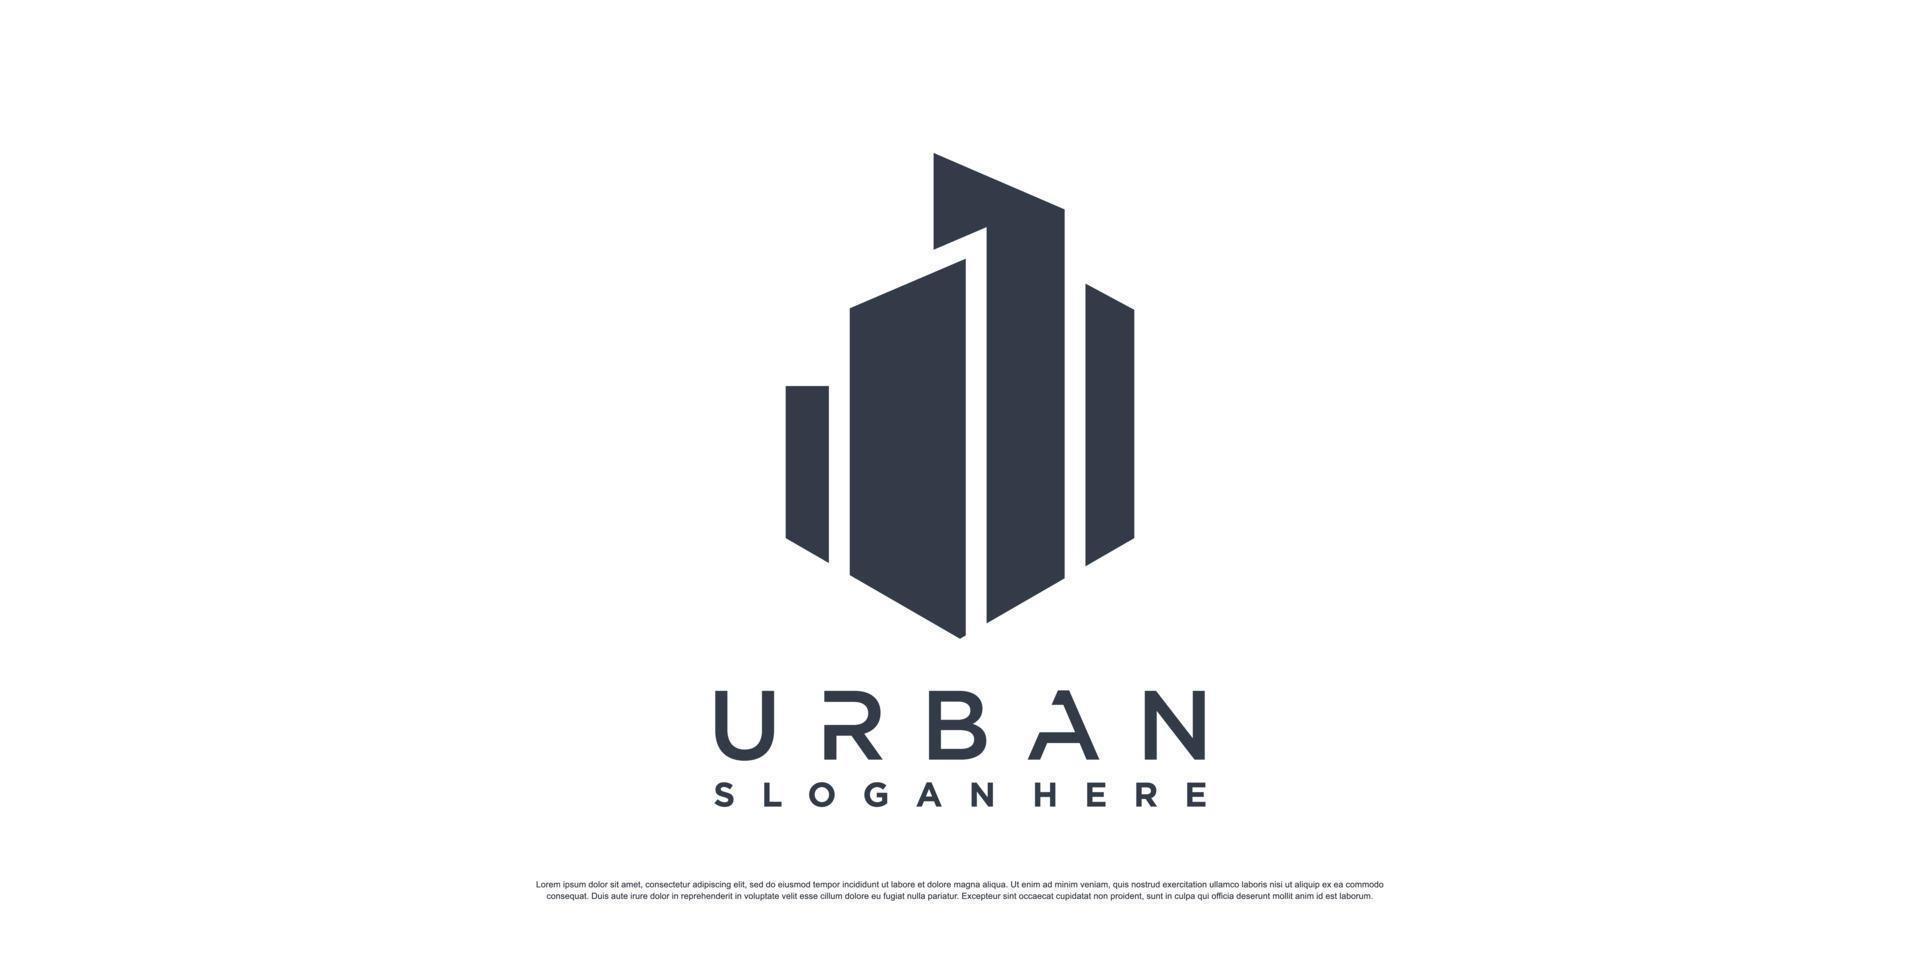 Gebäude-Logo-Design-Vorlage mit einzigartigem Konzept Premium-Vektor Teil 1 vektor